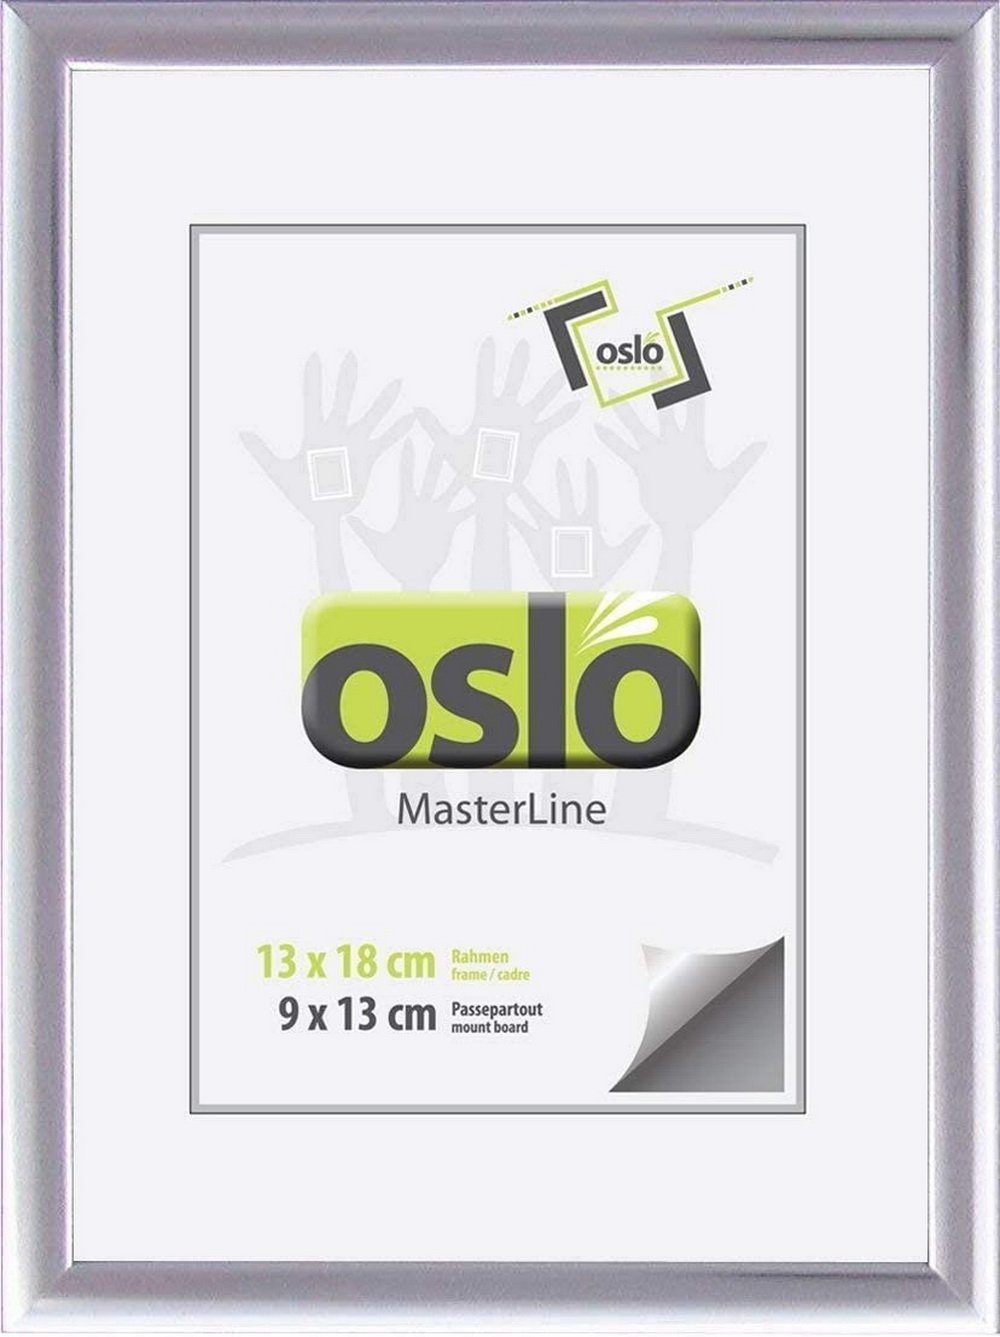 Oslo MasterLine Фоторамки Рамки 13 x 18 cm Aluminium schmal mit Aufsteller, silber glänzend Alu Hoch- und Querformat